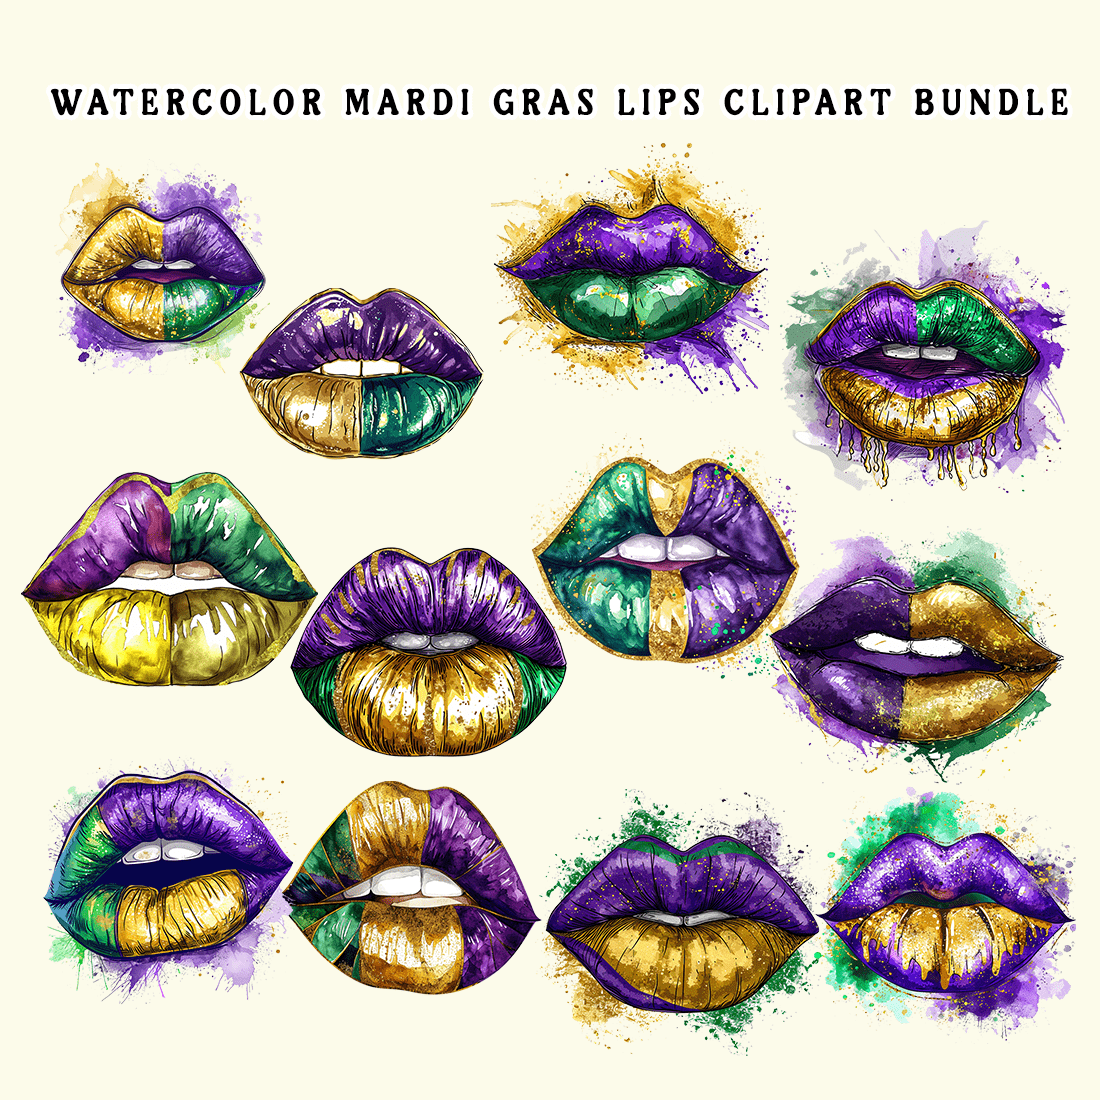 Watercolor Mardi Gras Lips Clipart Bundle preview image.